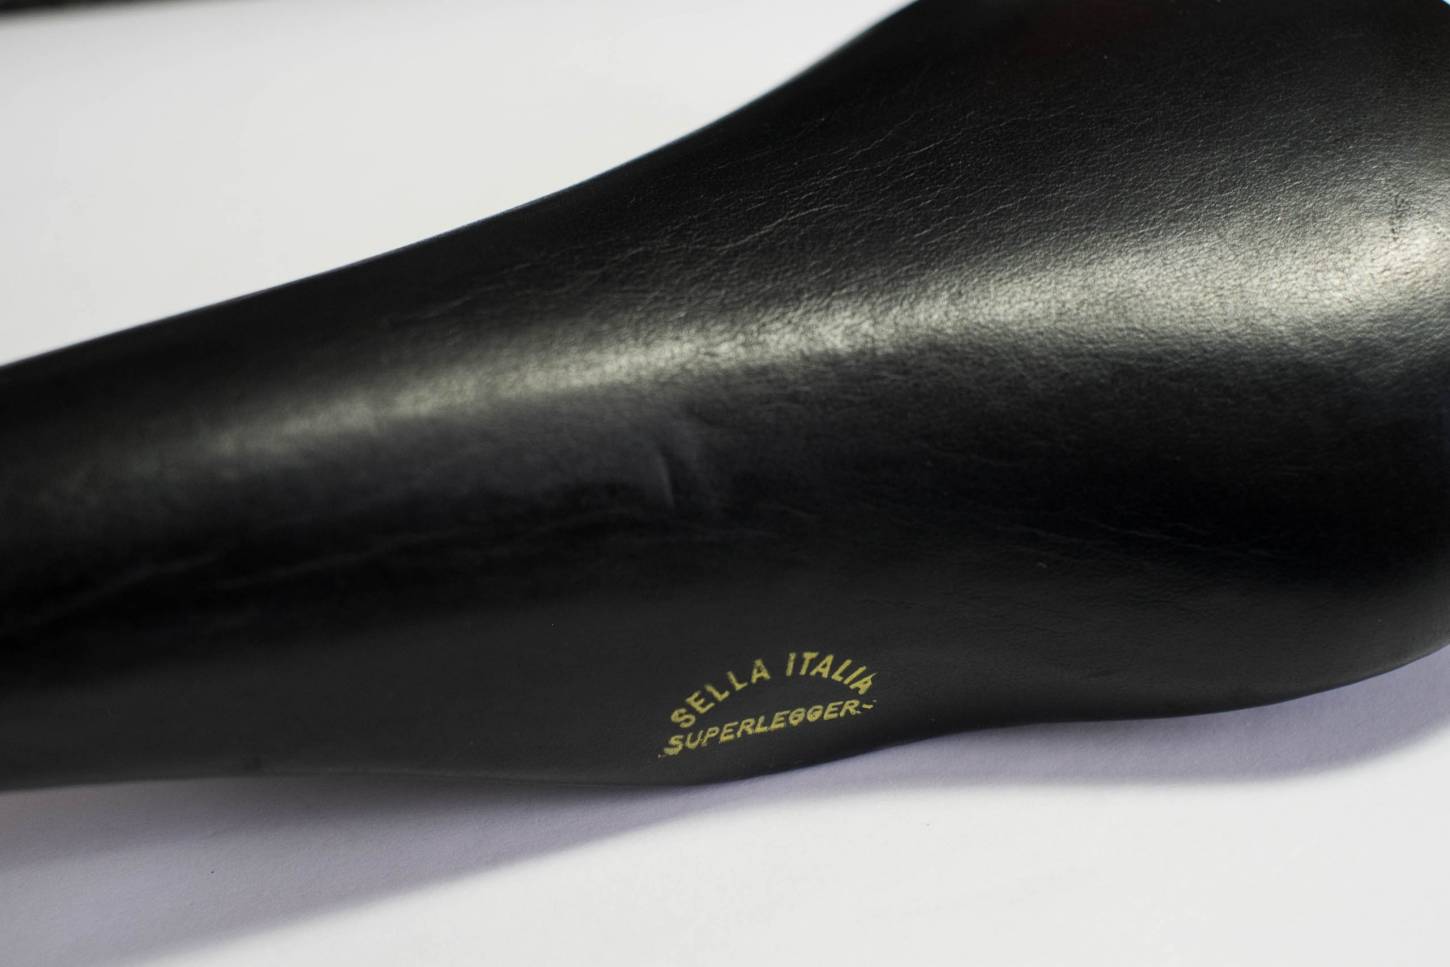 Sella Italia Superleggera Saddle leather black Saddle Vintage